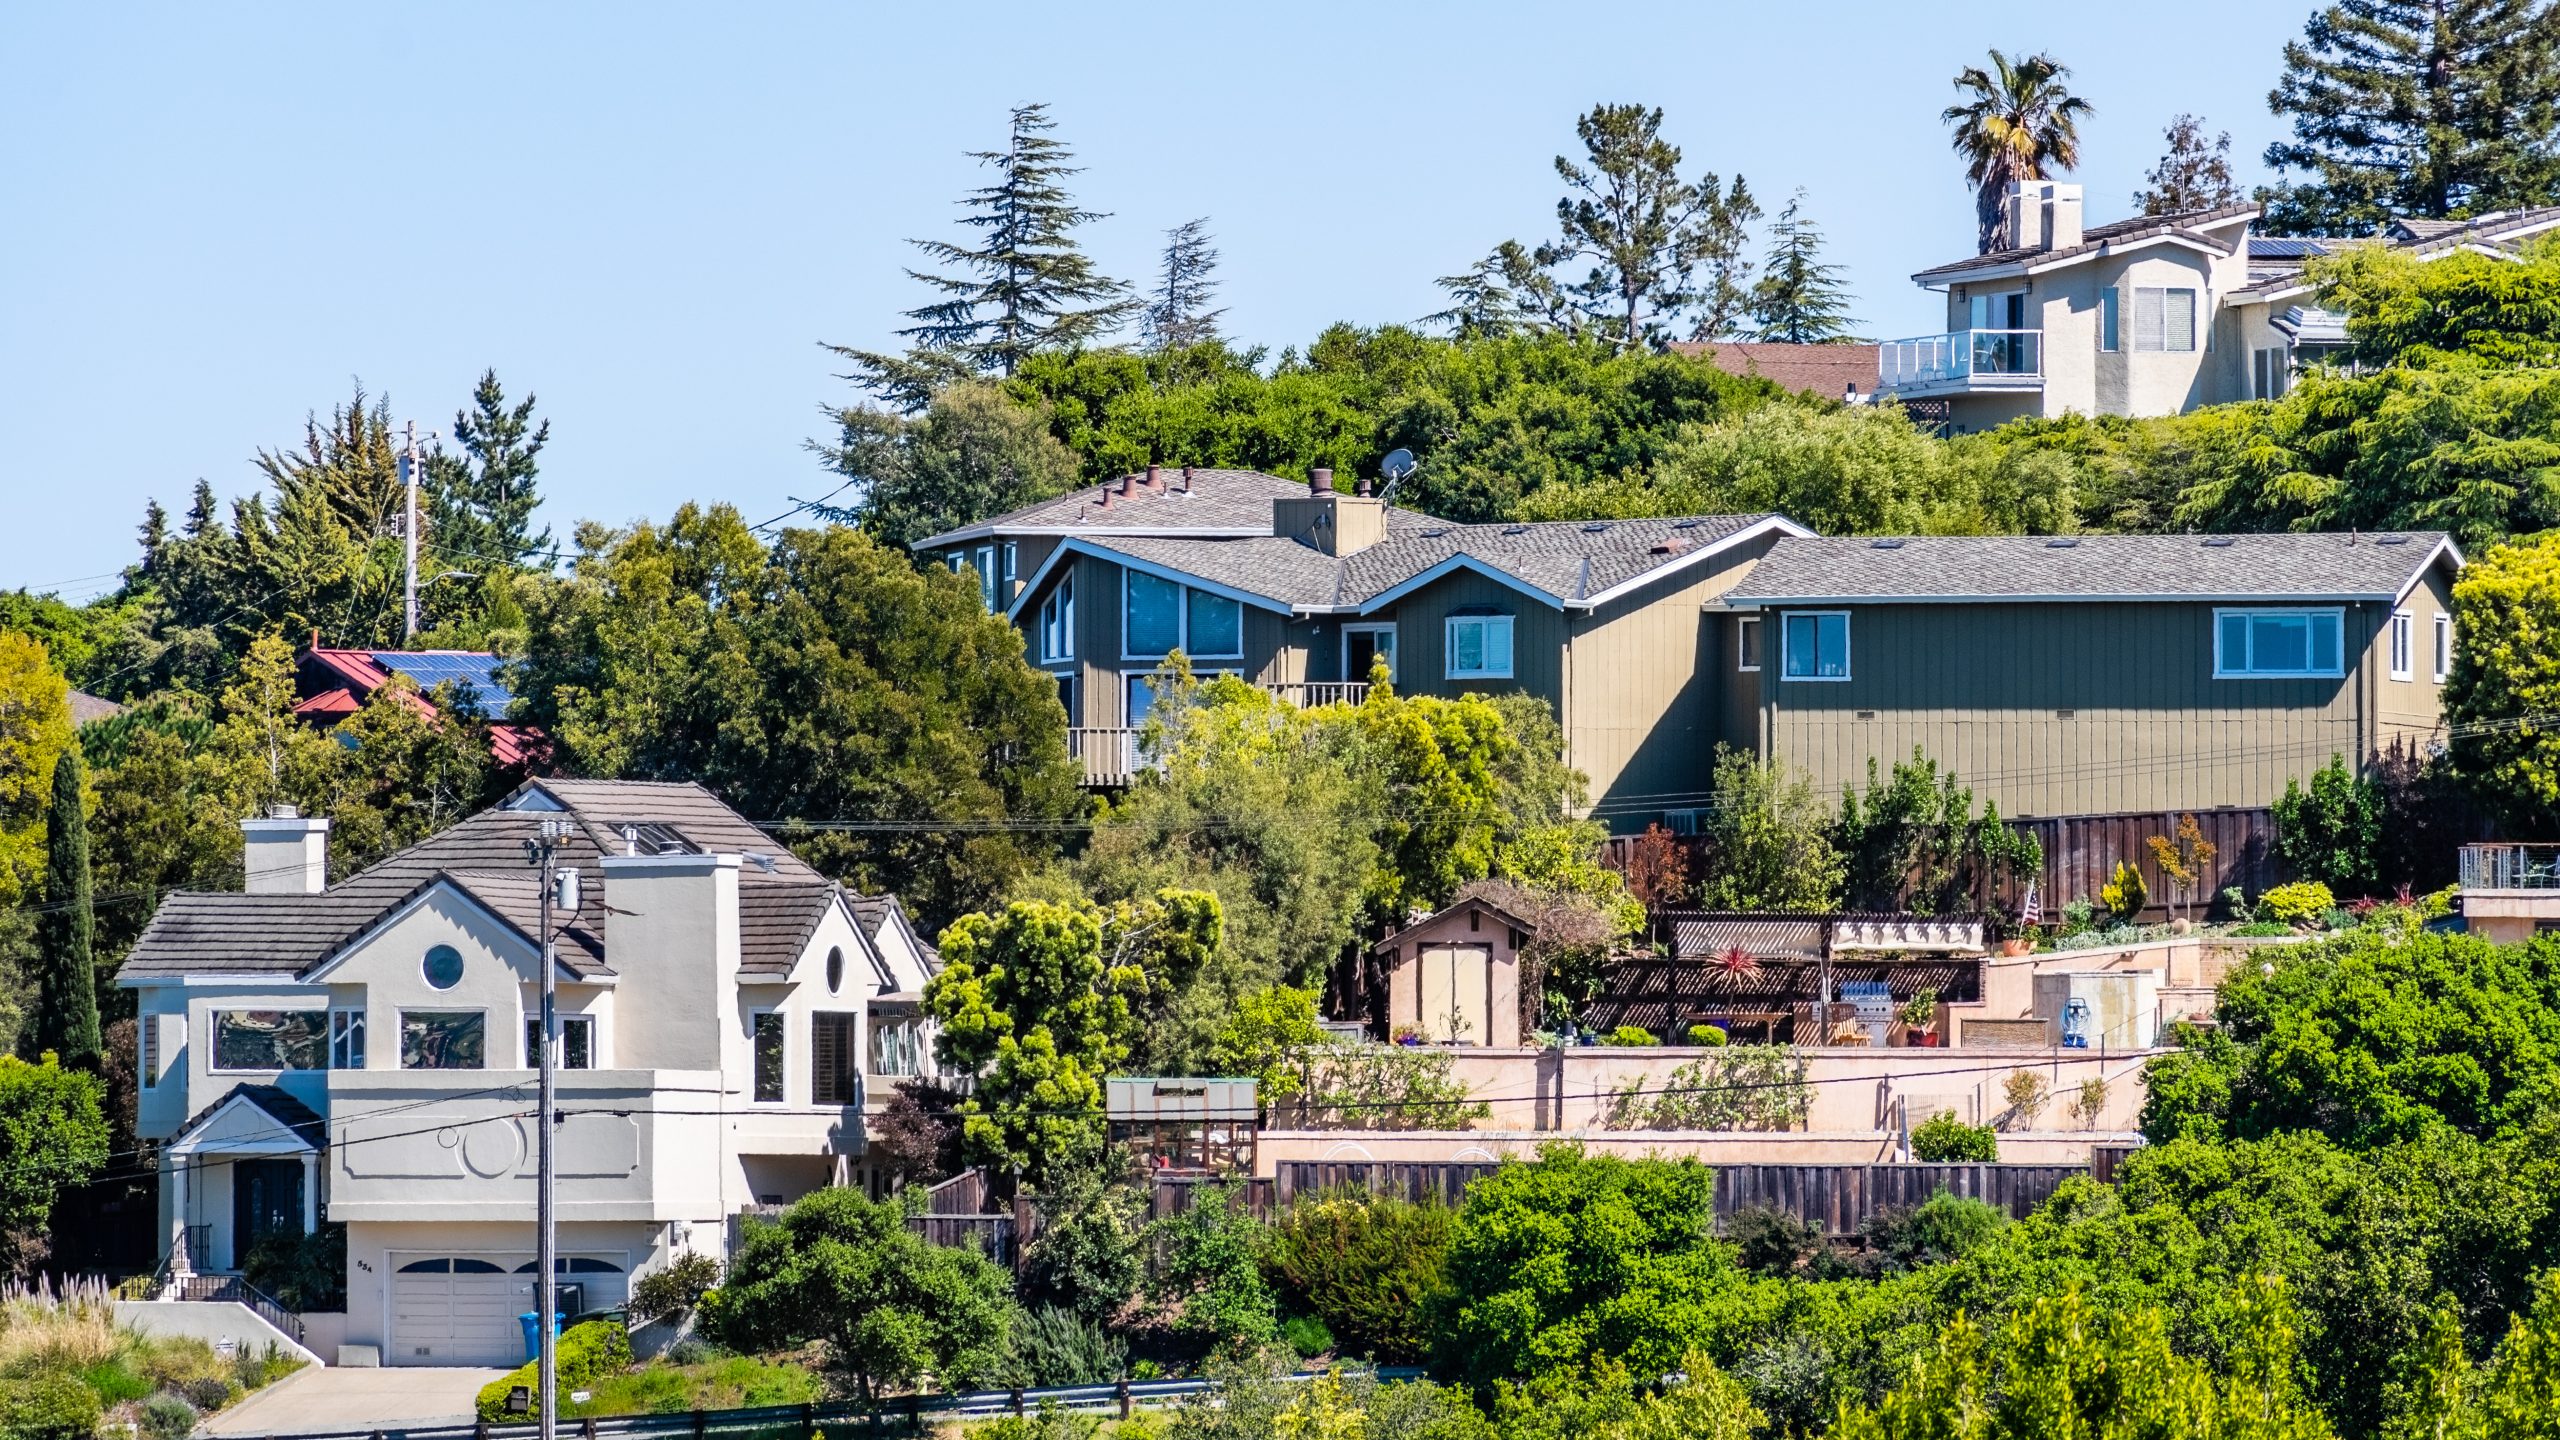 California mansions